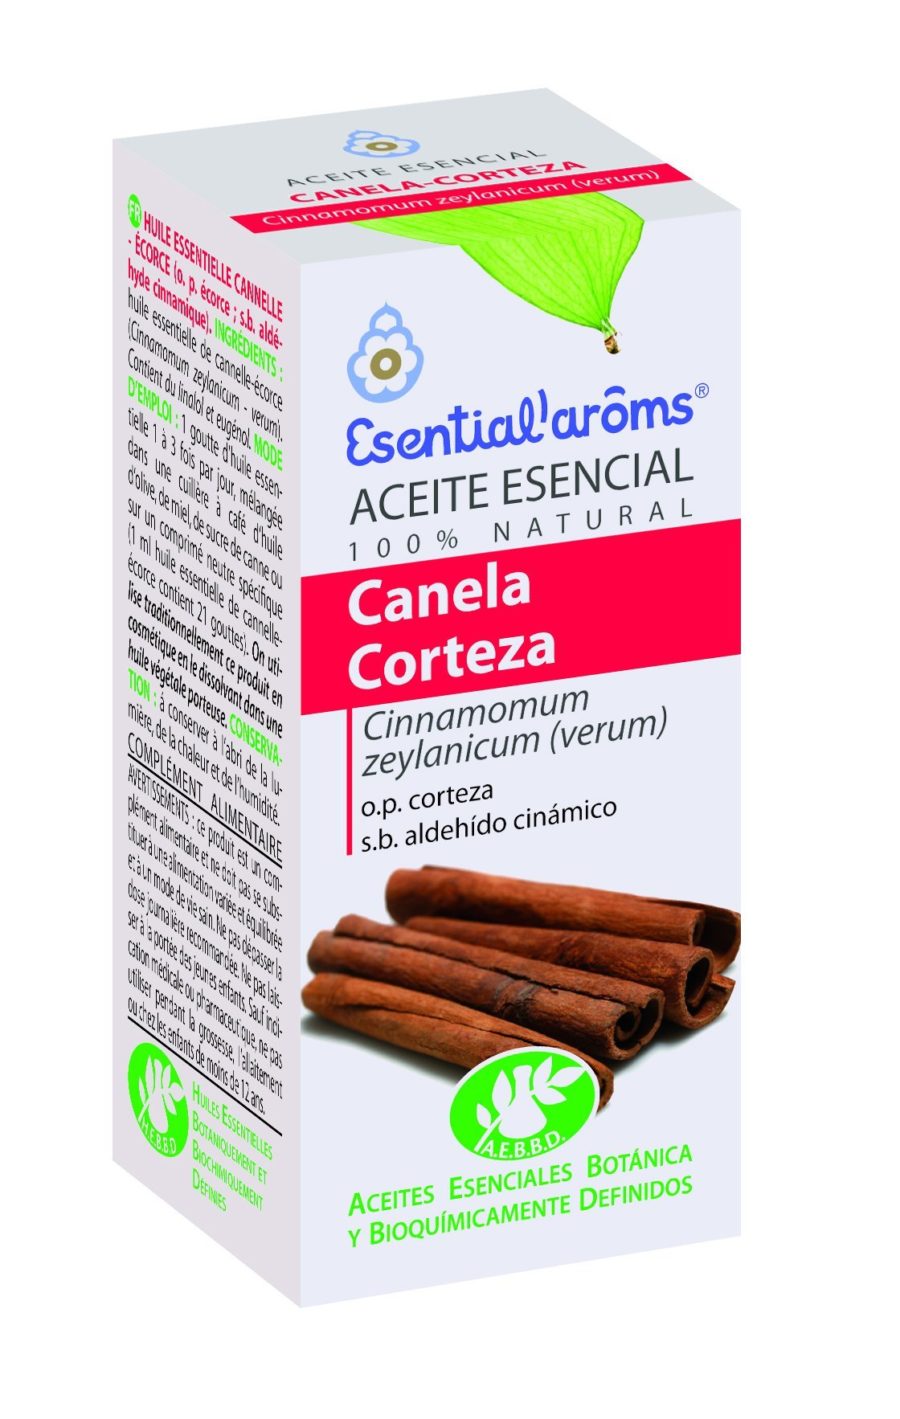 CANELA CORTEZA Aceite Esencial 22bf43d8 1869 457e bf51 b9fbe1dd539d 1